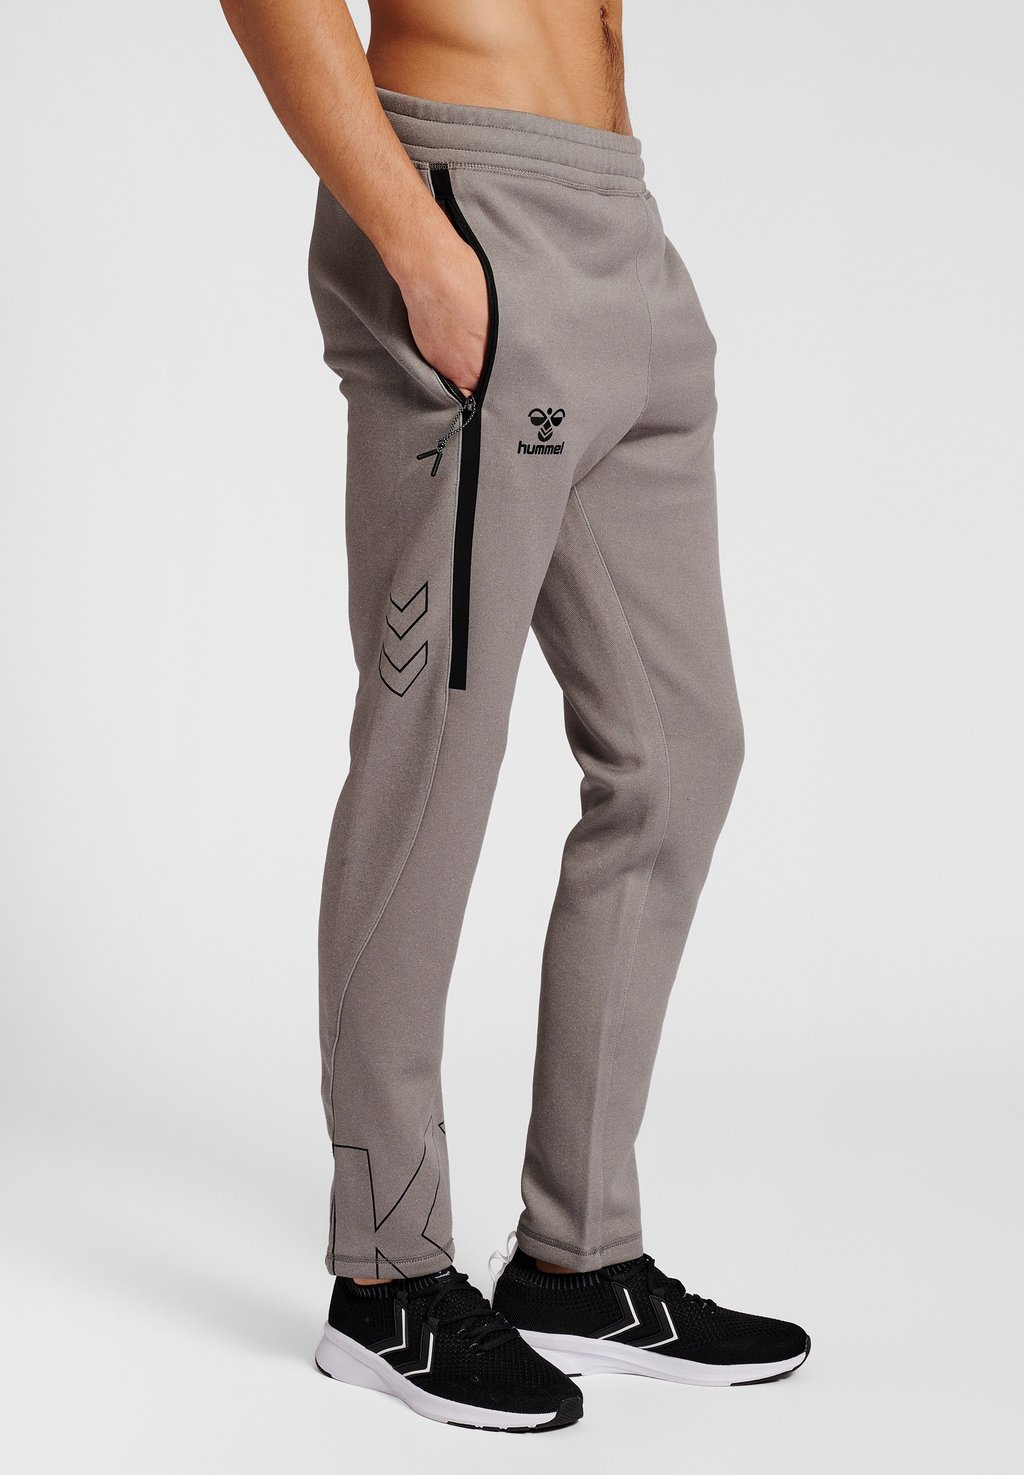 Спортивные брюки Hummel, серый меланж спортивные брюки ombre серый меланж